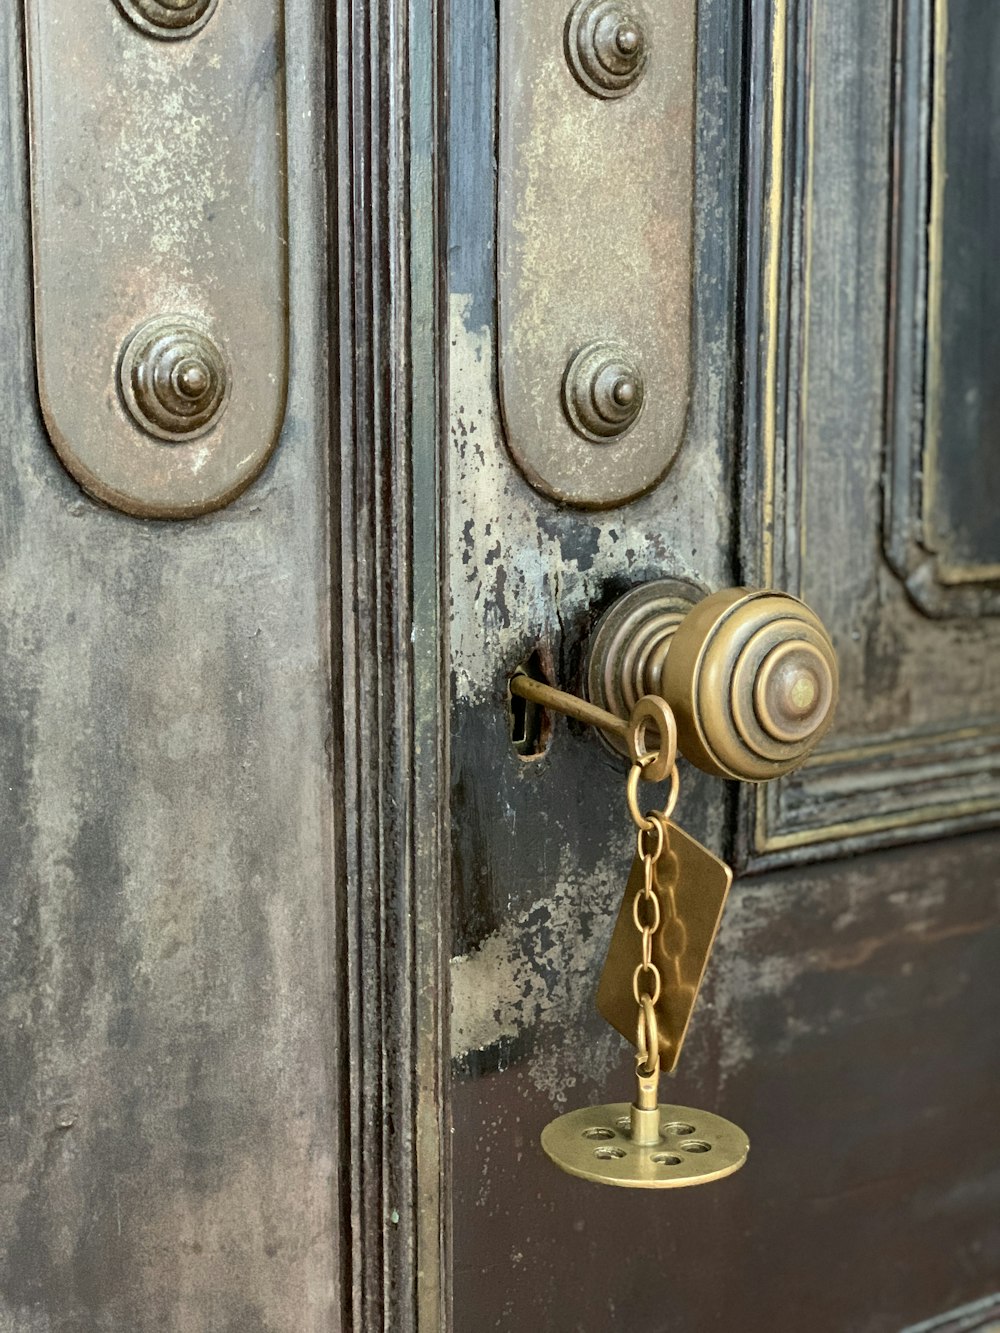 brass door handle on blue wooden door